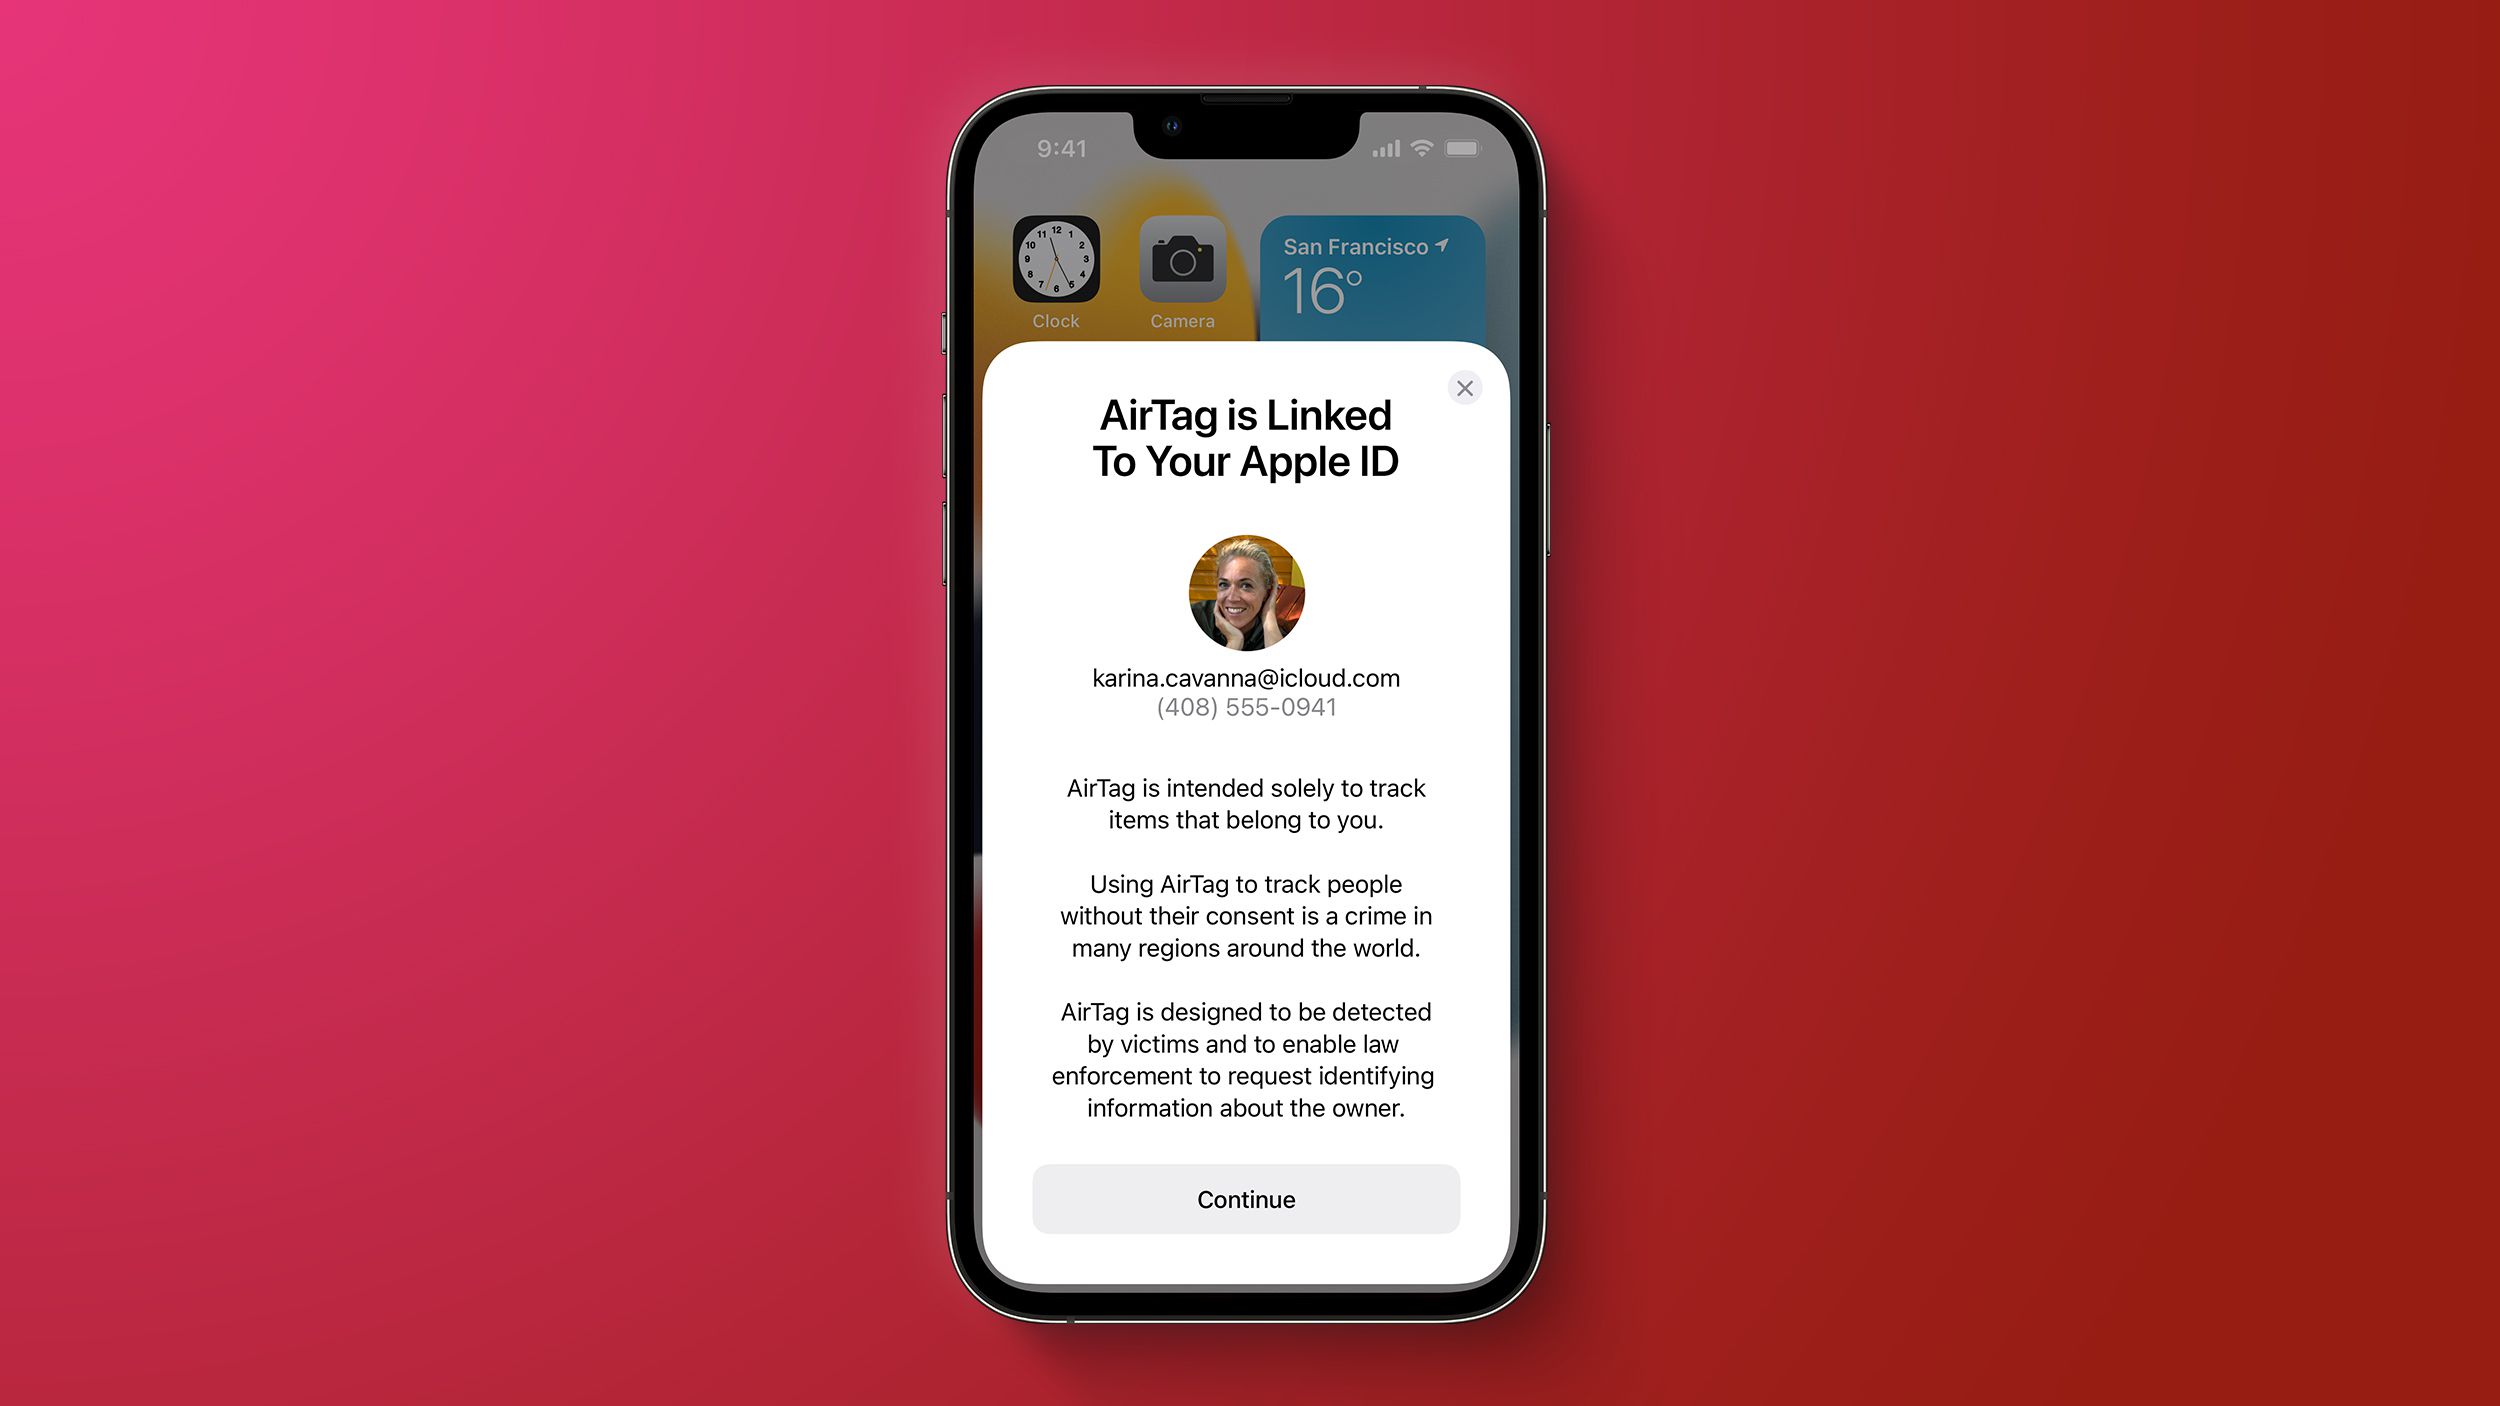 Komunikat mówiący o powiązaniu AirTaga z kontem Apple ID